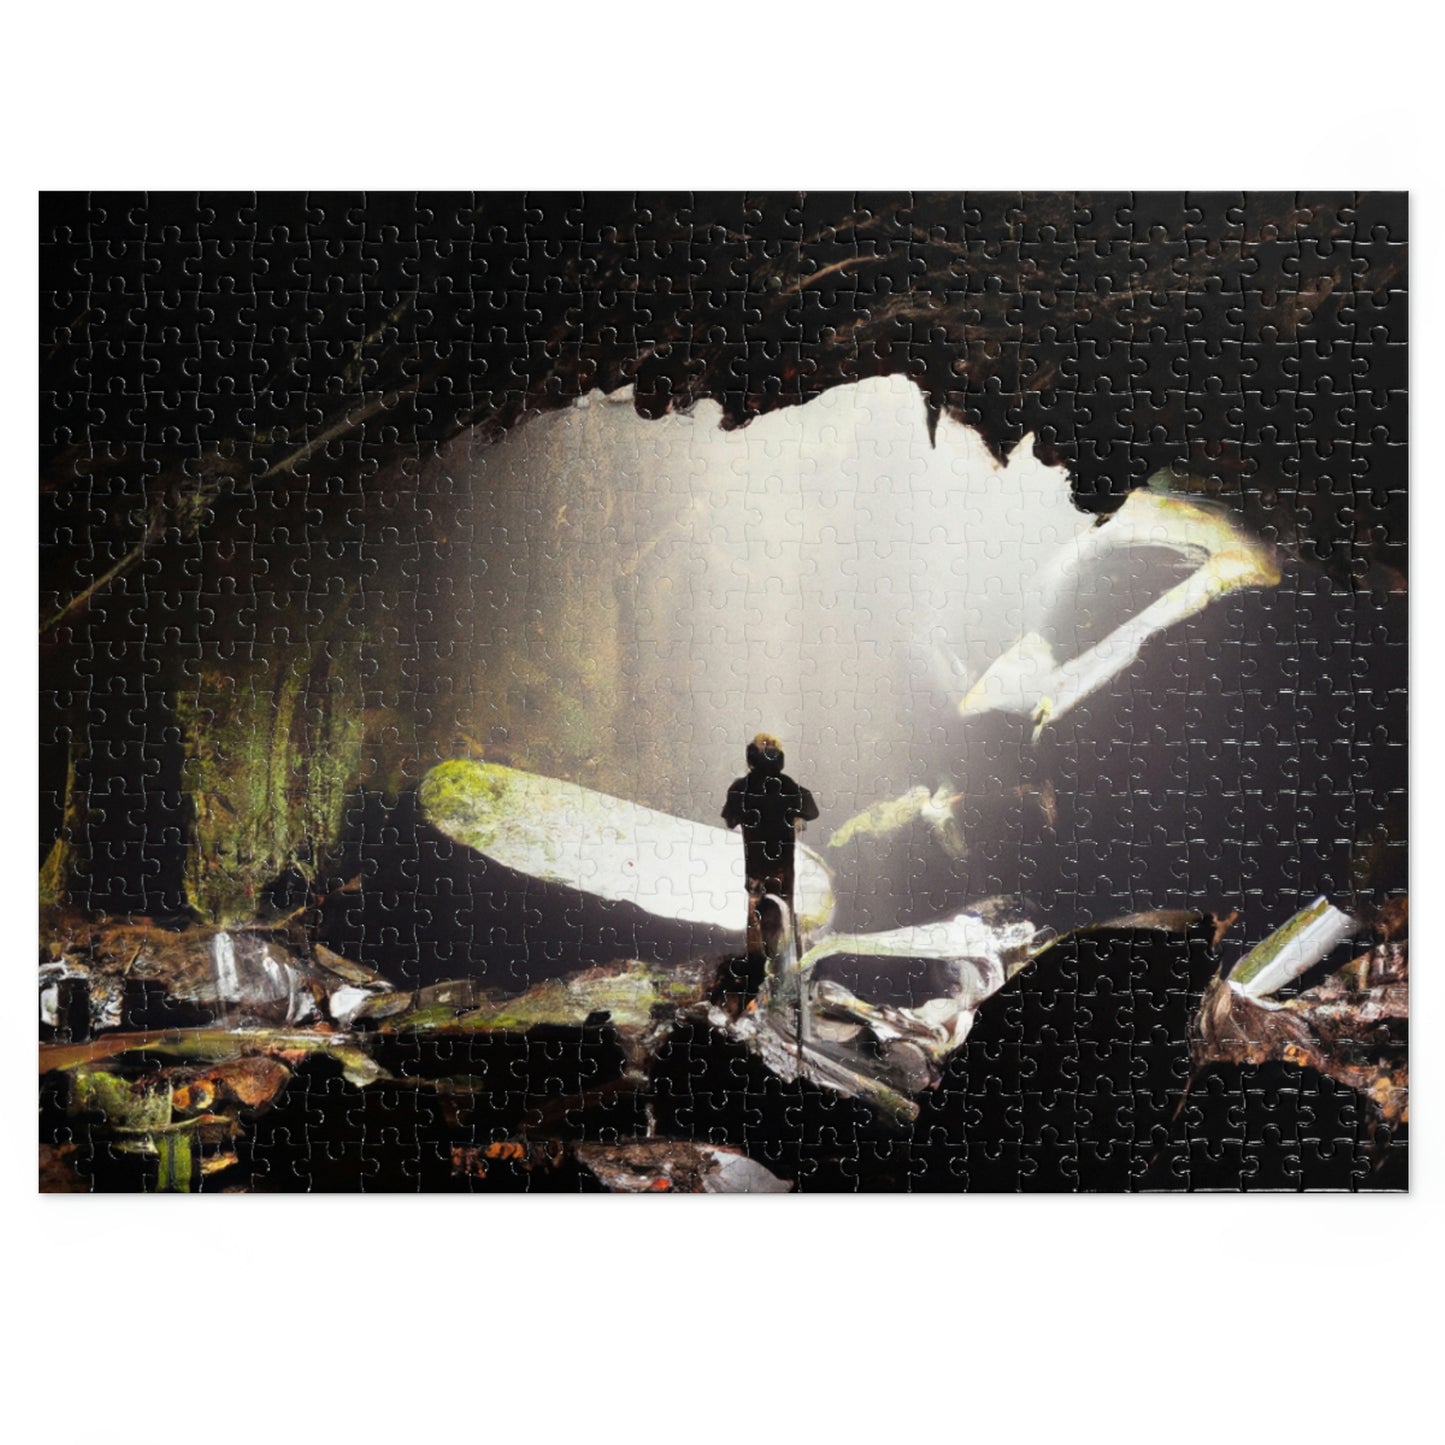 El misterio de la cueva abandonada - El rompecabezas alienígena